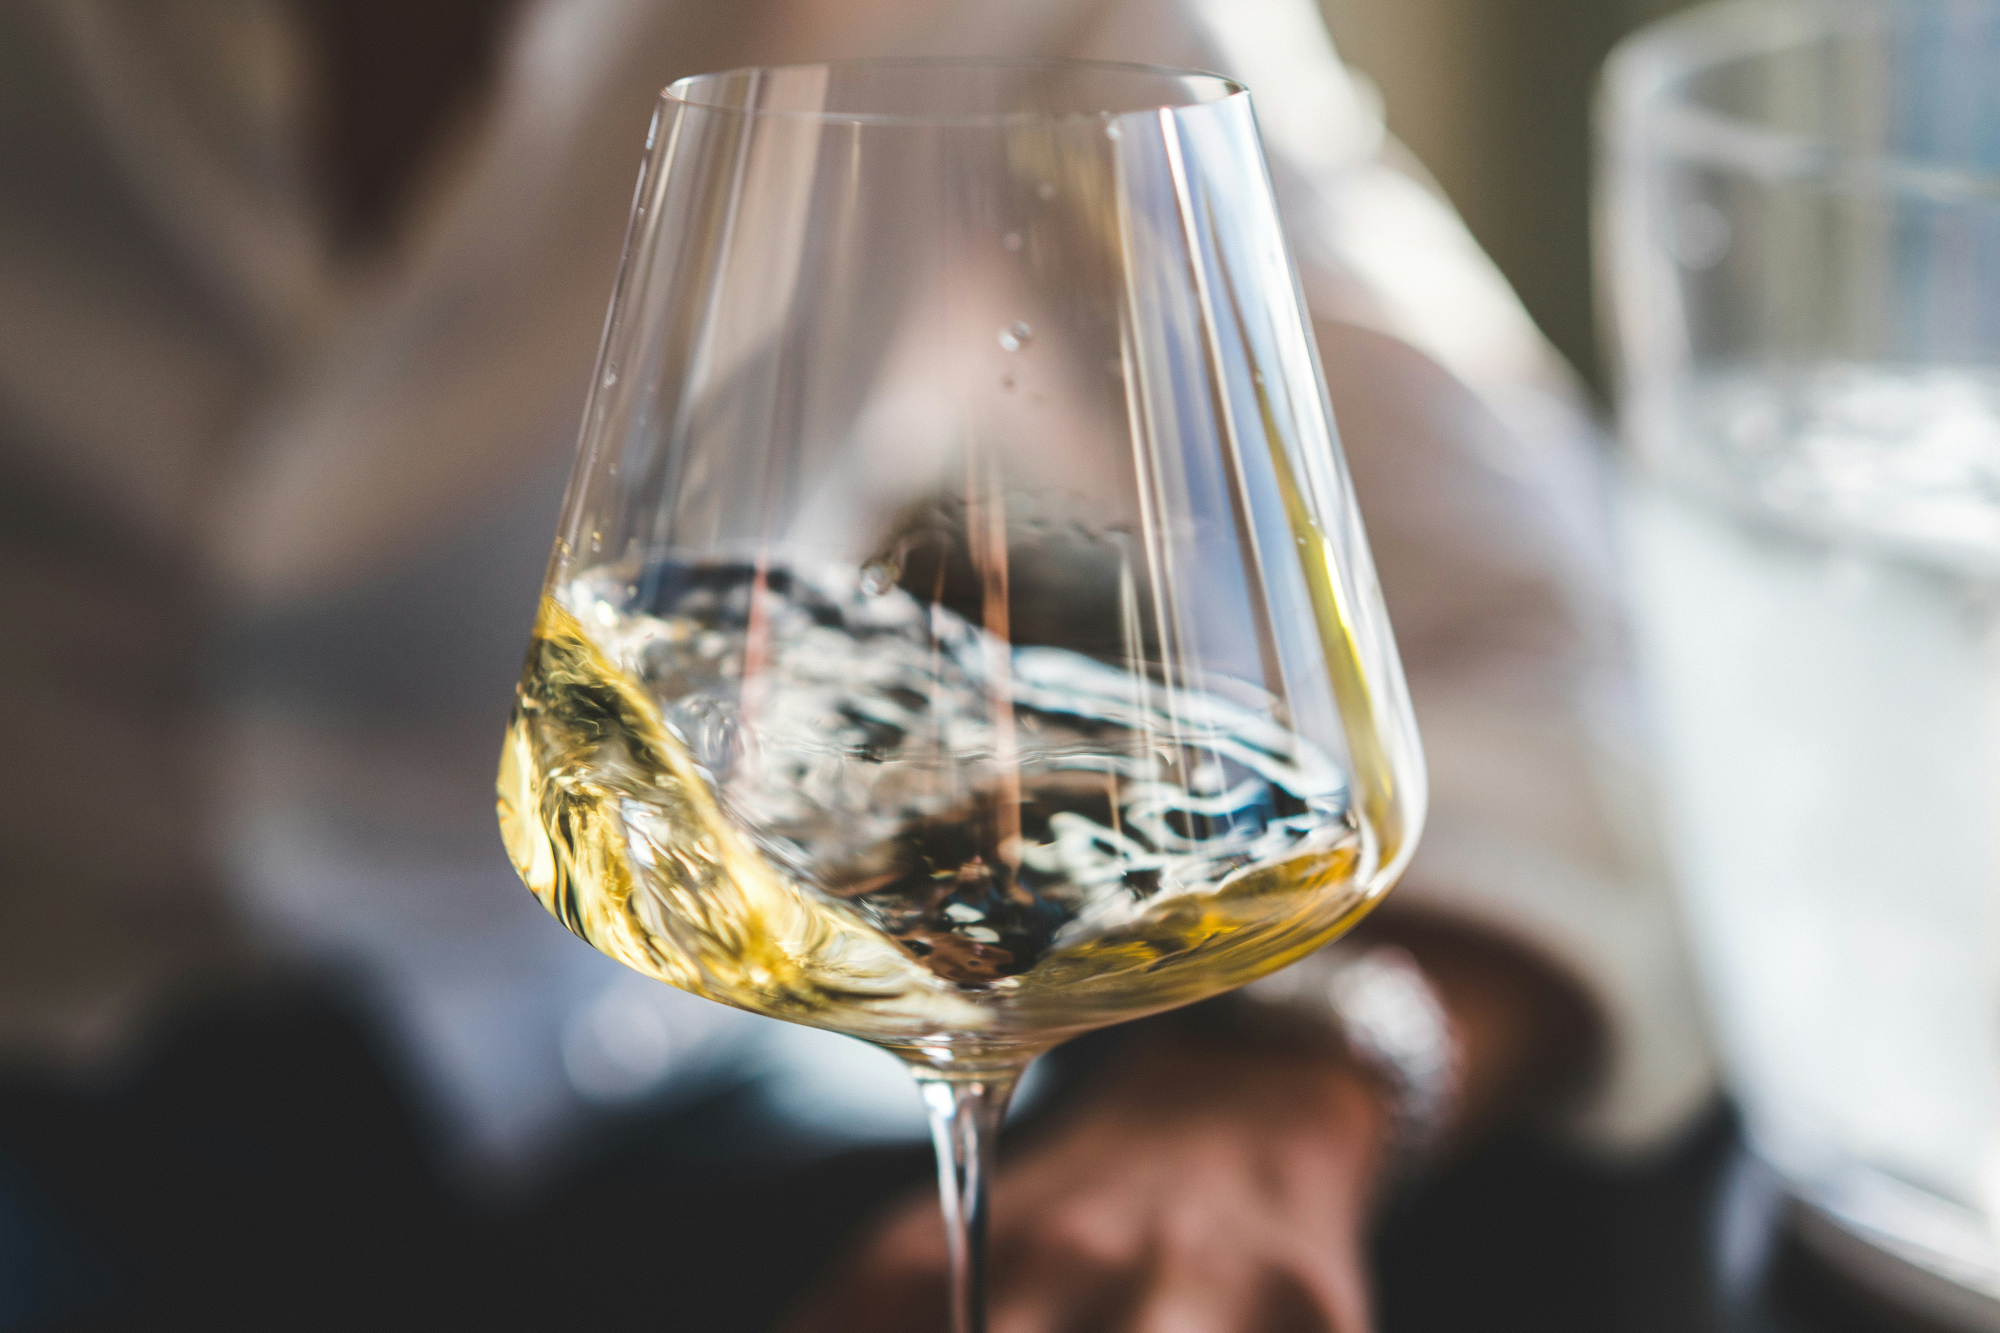 découvrez une sélection de vins blancs de qualité, parfaits pour accompagner vos repas et vos soirées. profitez de notre choix de white wine pour faire de chaque occasion un moment mémorable.